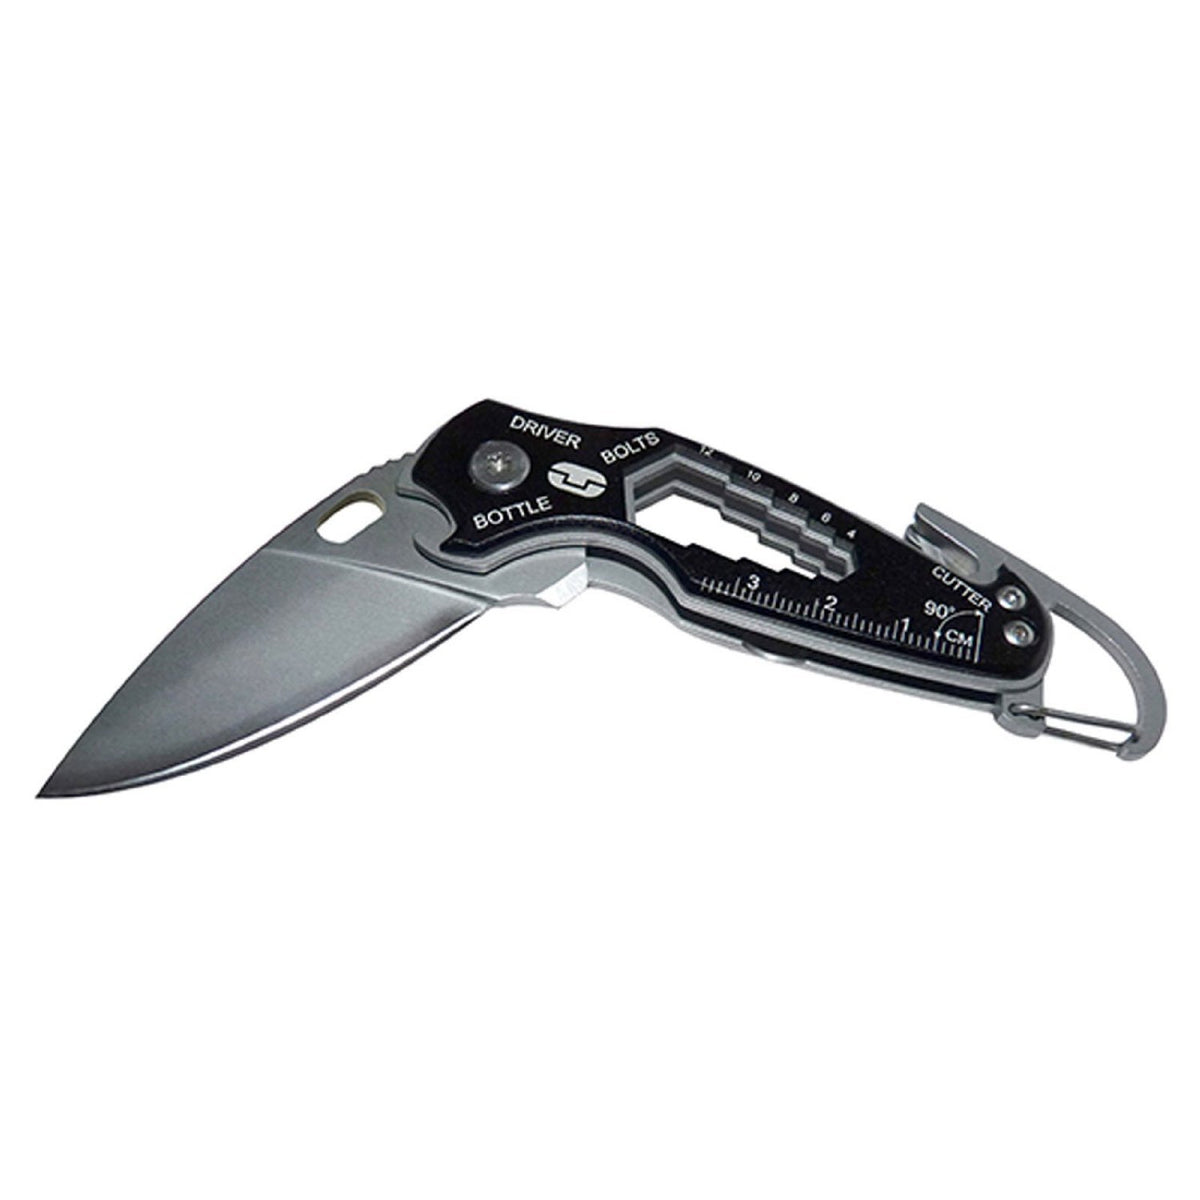 True Utility - Smart Knife+ Drop Point Folding Knife – Campnsea